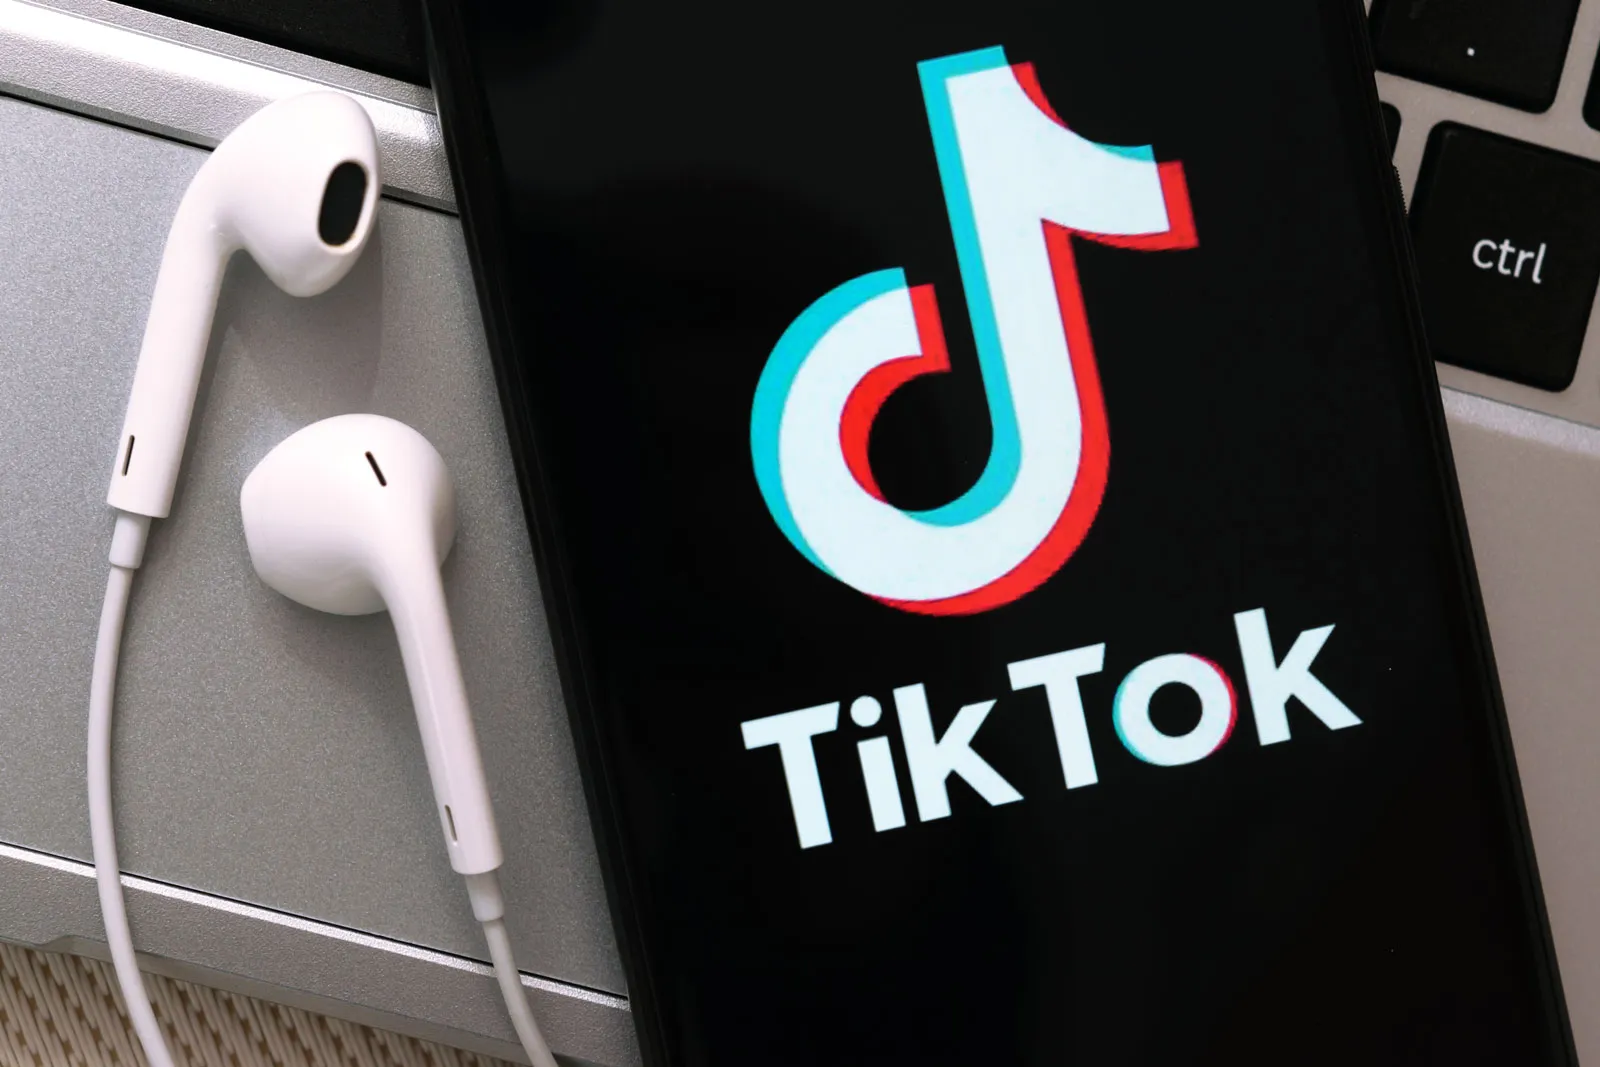 Major Shakeup at TikTok: Scores of Jobs Cut in Surprising Company Overhaul